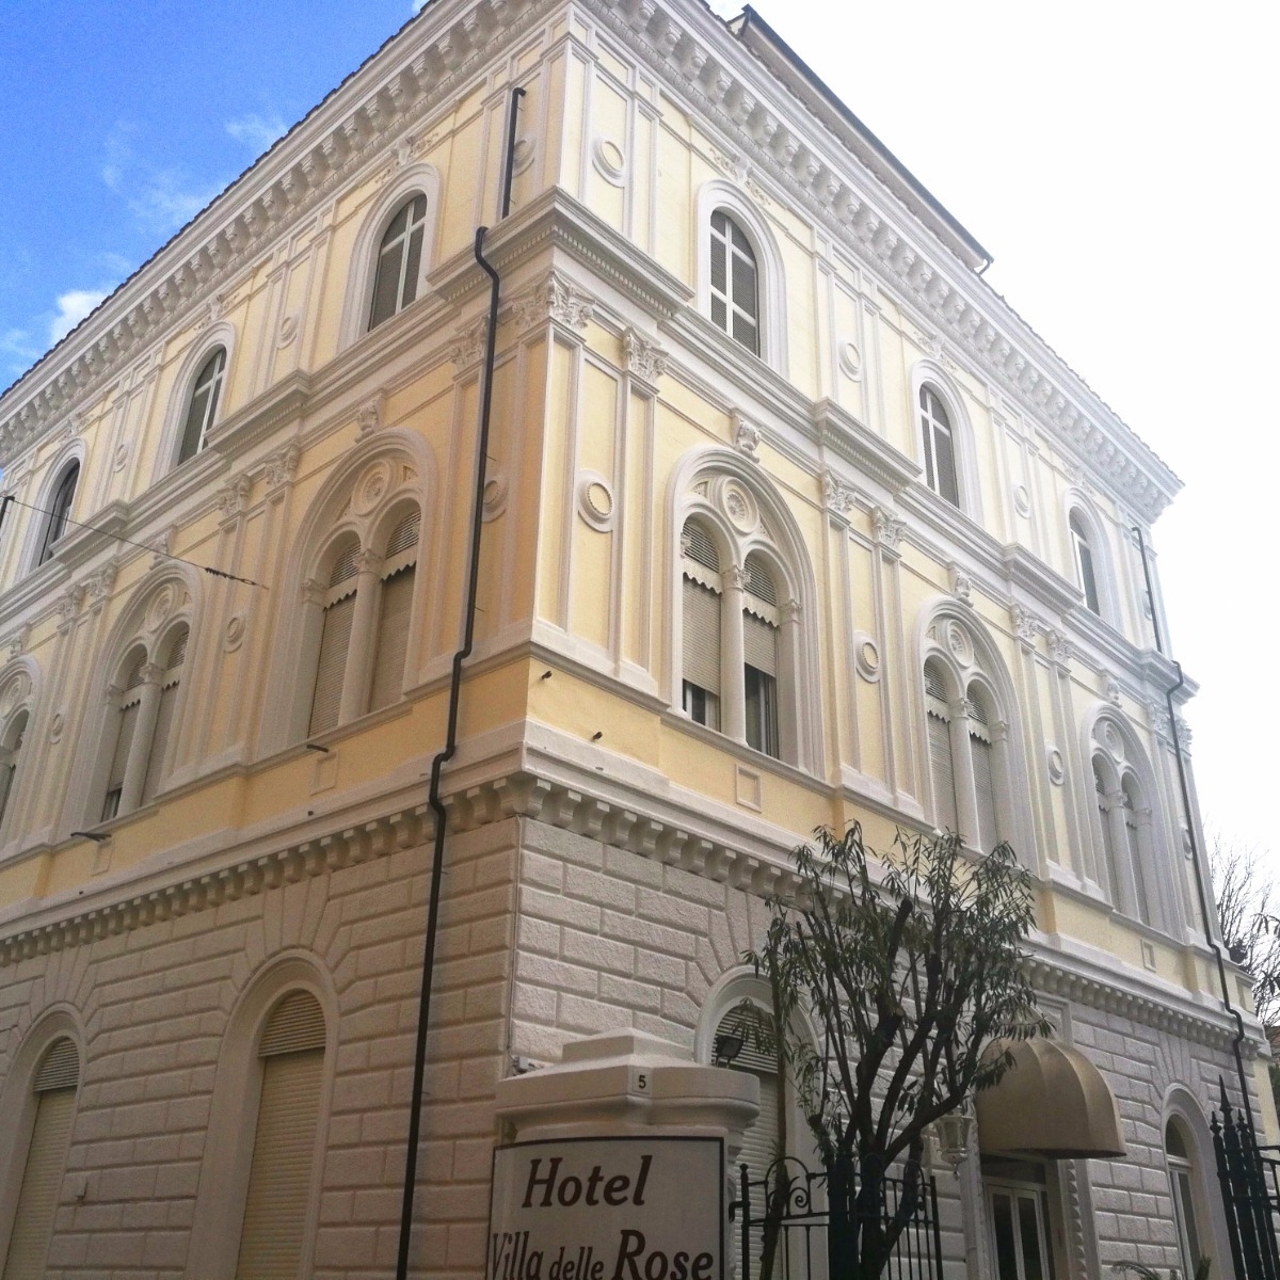 Hotel Villa delle Rose - 3 HRS star hotel in Rome (Lazio)